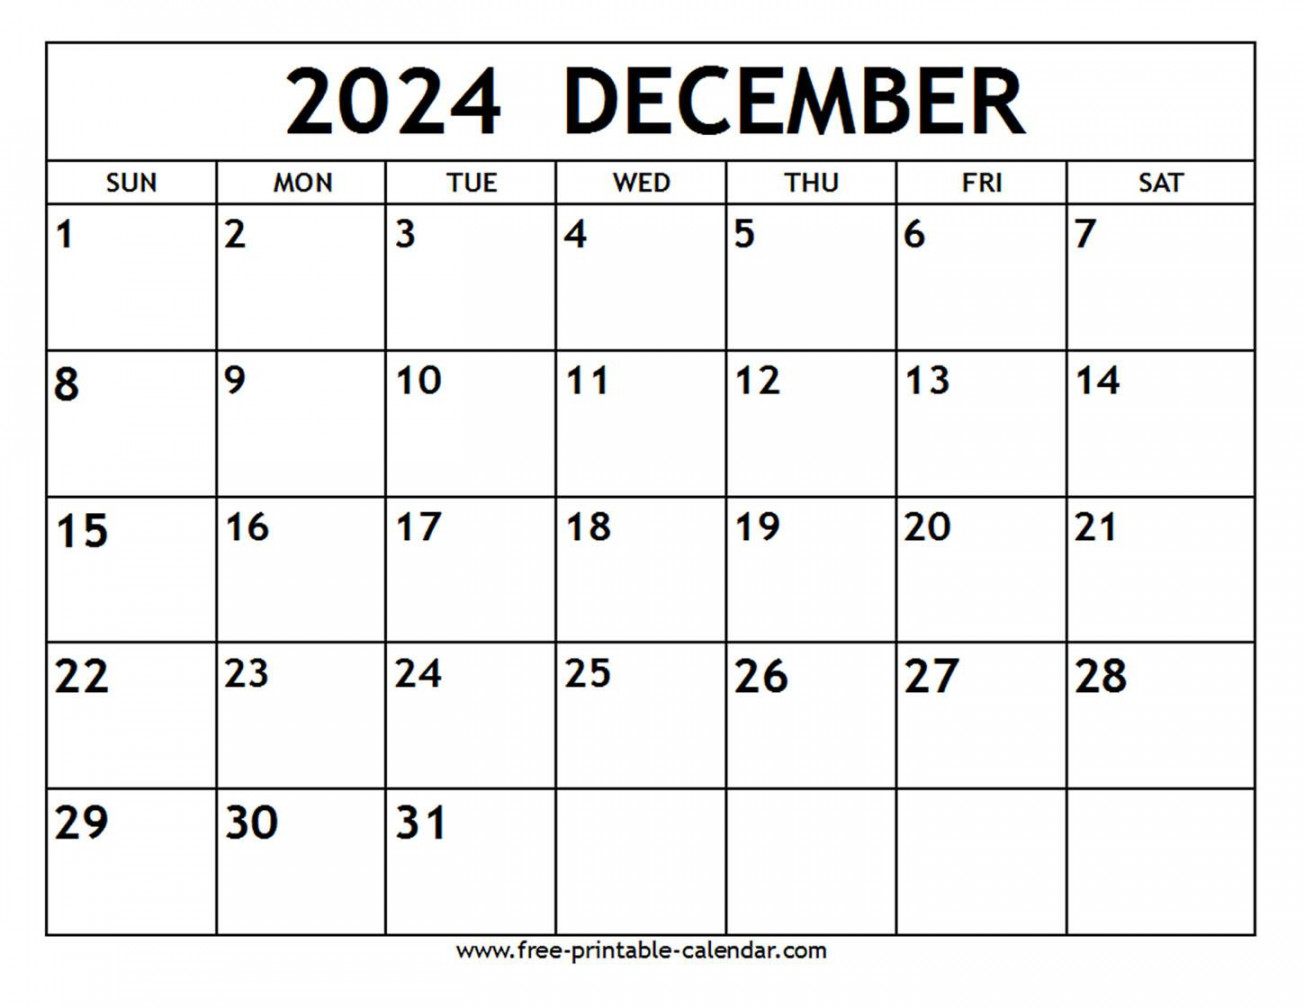 december calendar free printable calendar com